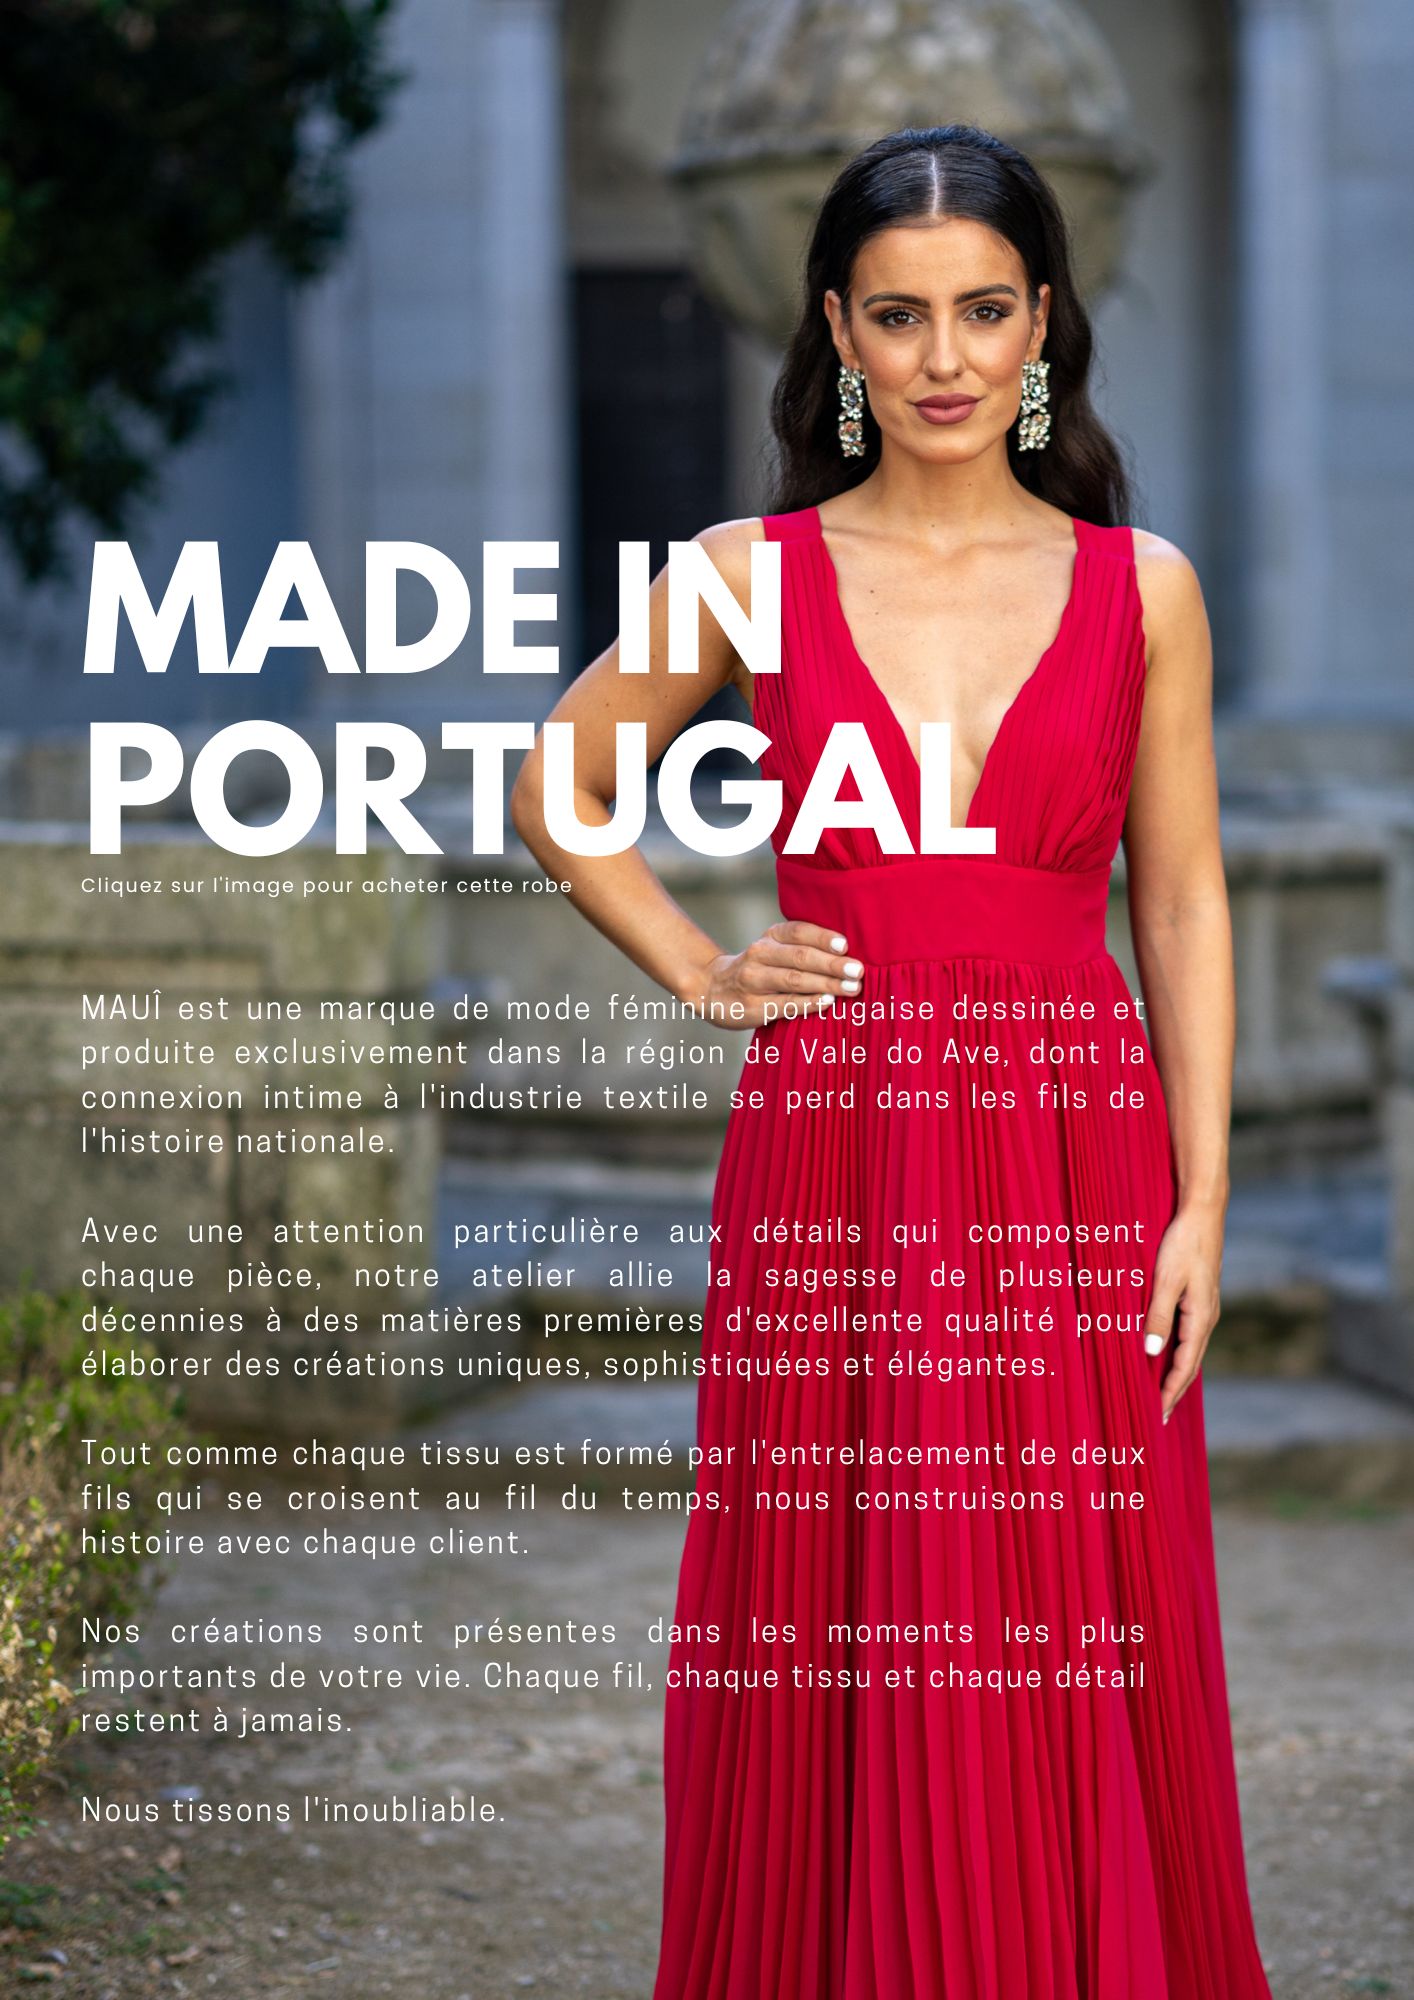 MAUI, robes de soirée, marque 100% portugaise, fait main, haute qualité, couleurs personnalisées, expédition rapide, mode féminine, durable